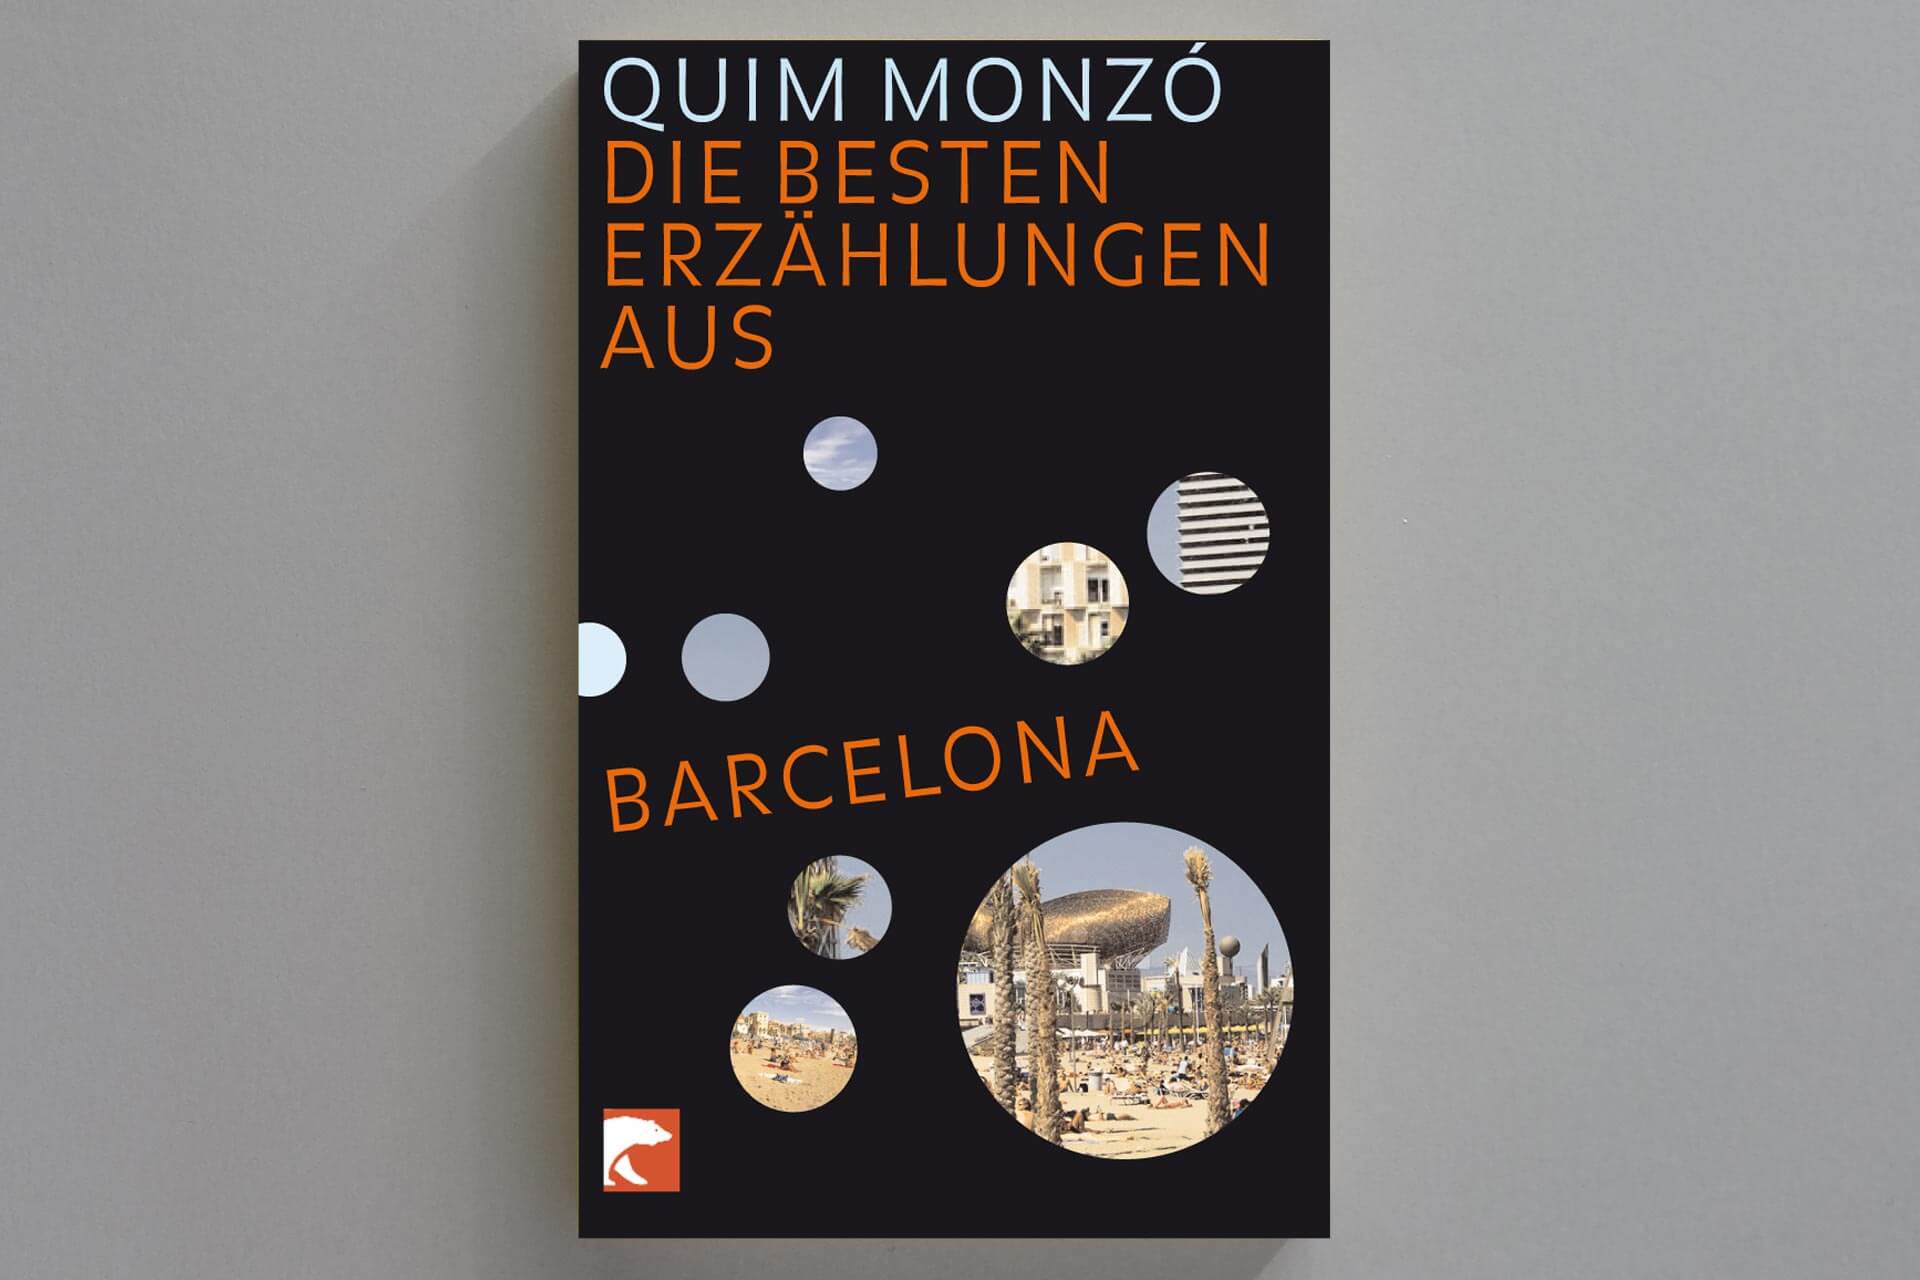 Abbildung einer Buchcover-Gestaltung für das Buch „Die besten Erzählungen aus Barcelona“ von Quiz Monza